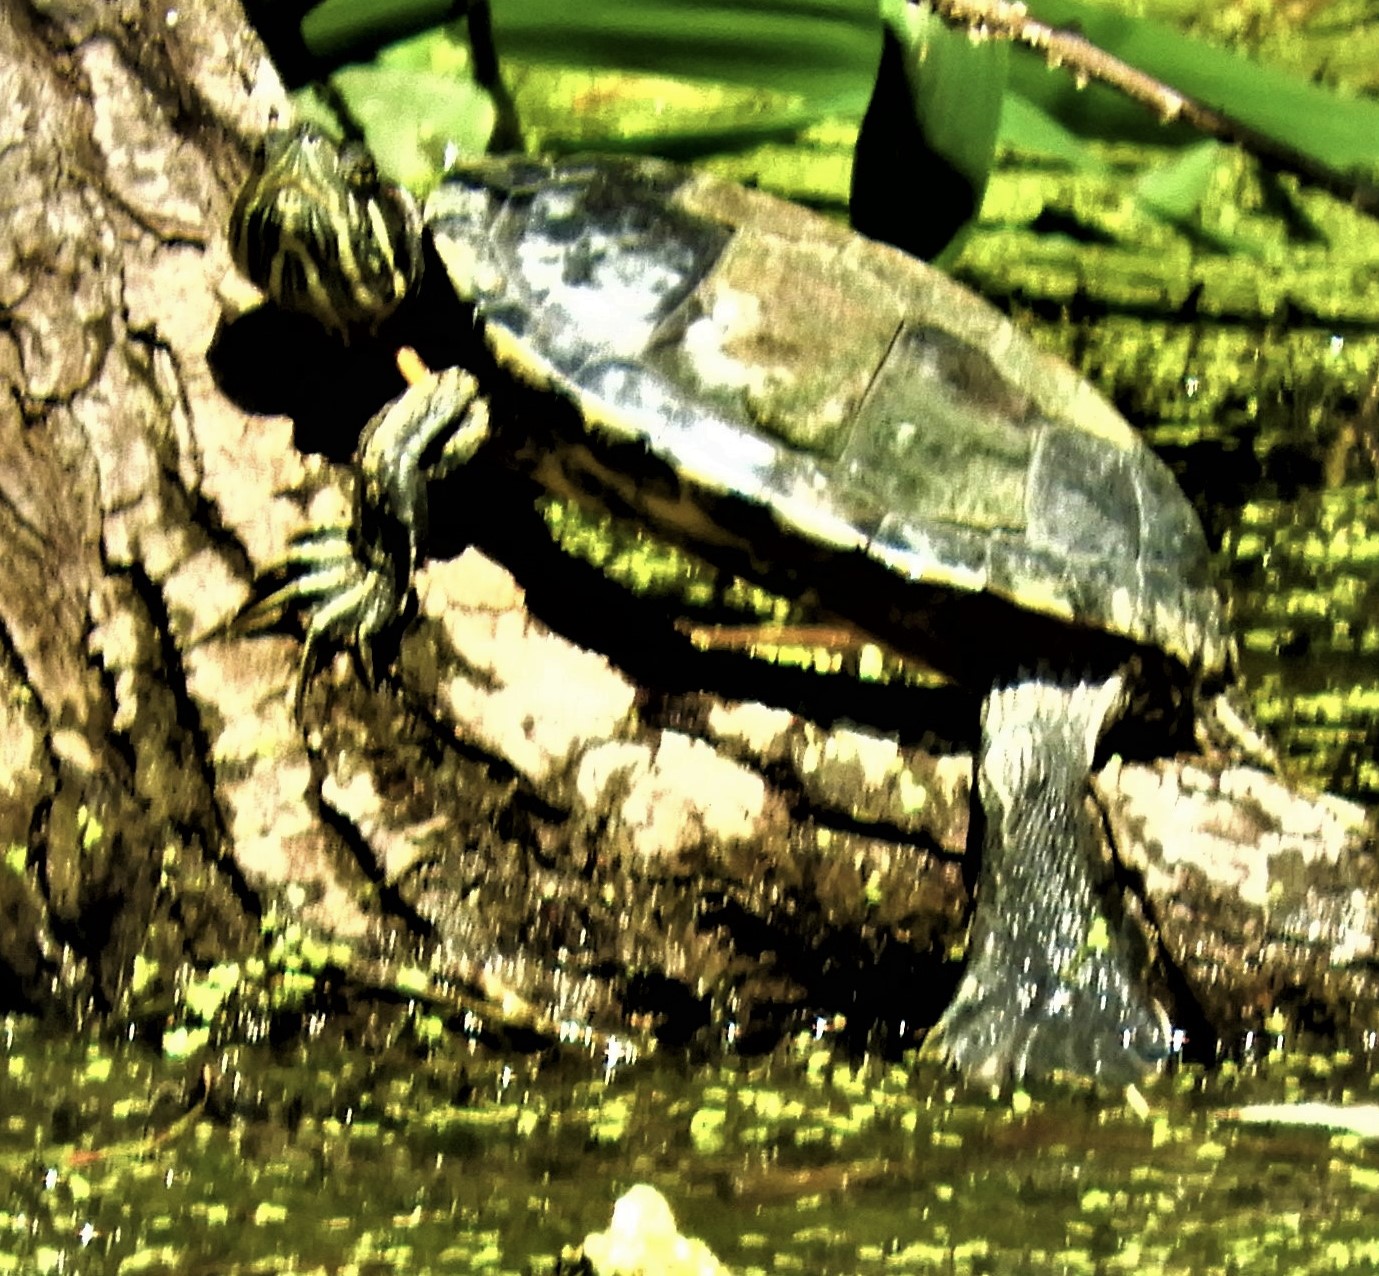 Биосфера. На следующий день. Обнаружил черепаху на том же месте, рядом с болотными курочками.